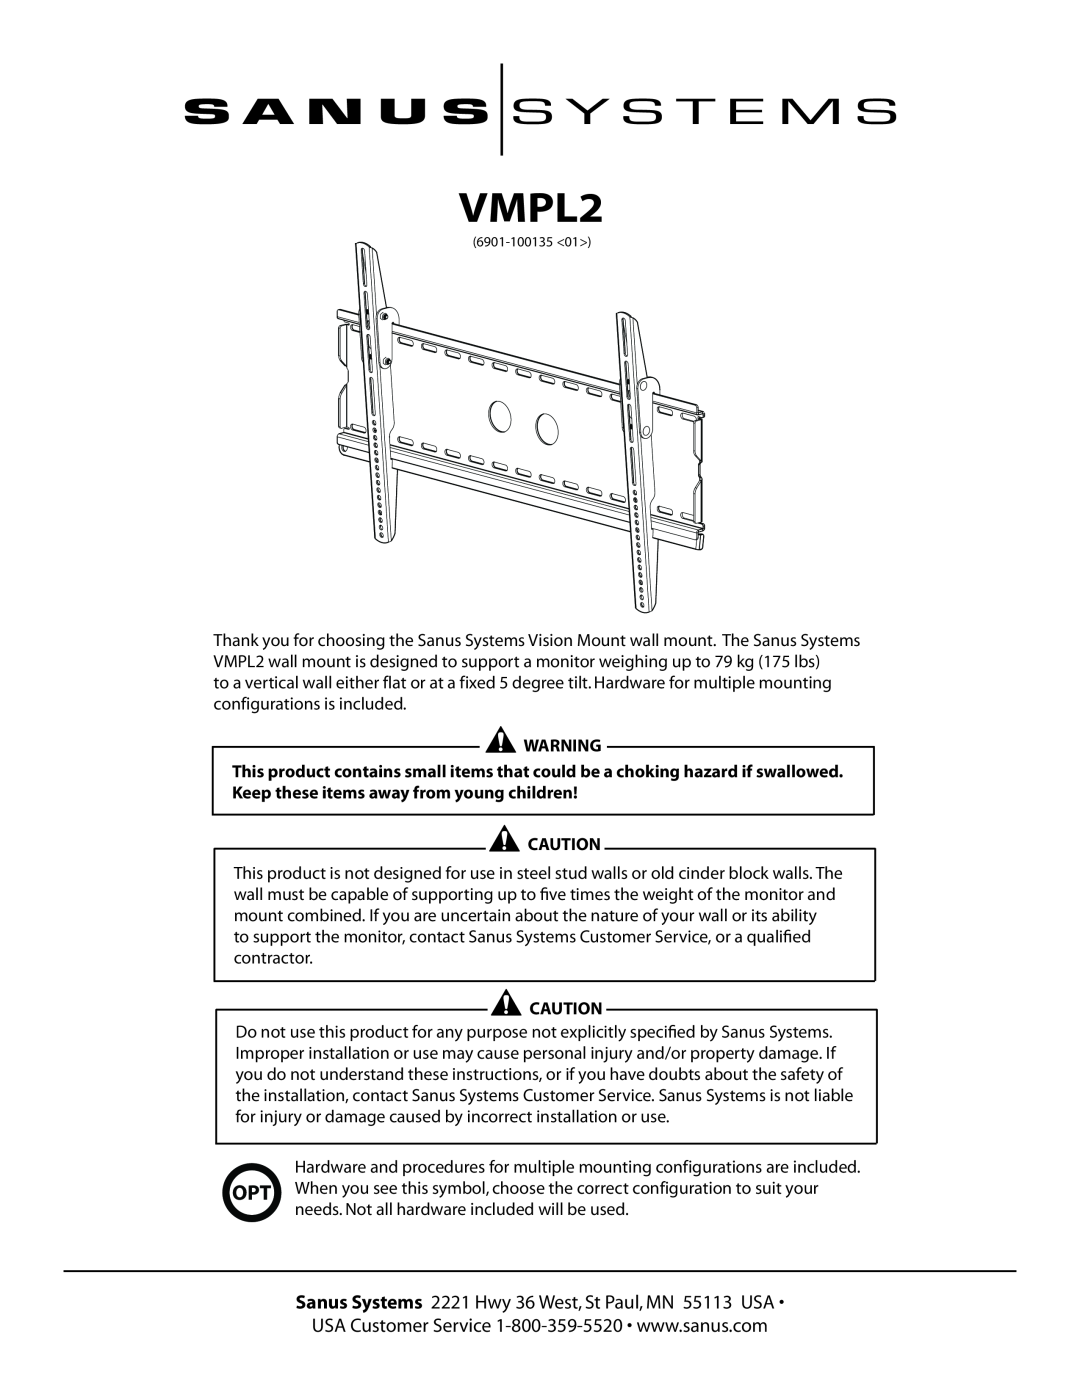 Sanus Systems VMPL2 manual 